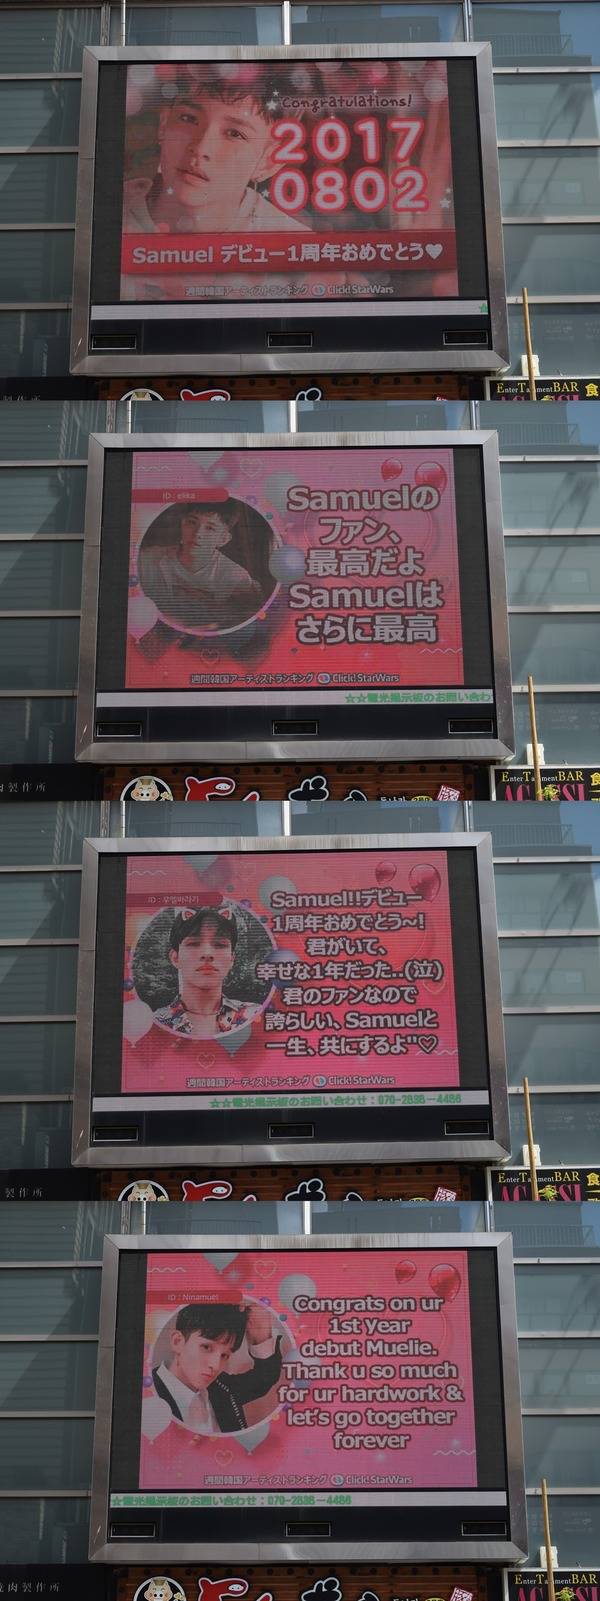 사무엘, 생일 축하해 2일 일본 도쿄에 위치한 전광판에서 가수 사무엘의 생일을 축하하는 영상이 상영 중이다. /클릭스타워즈